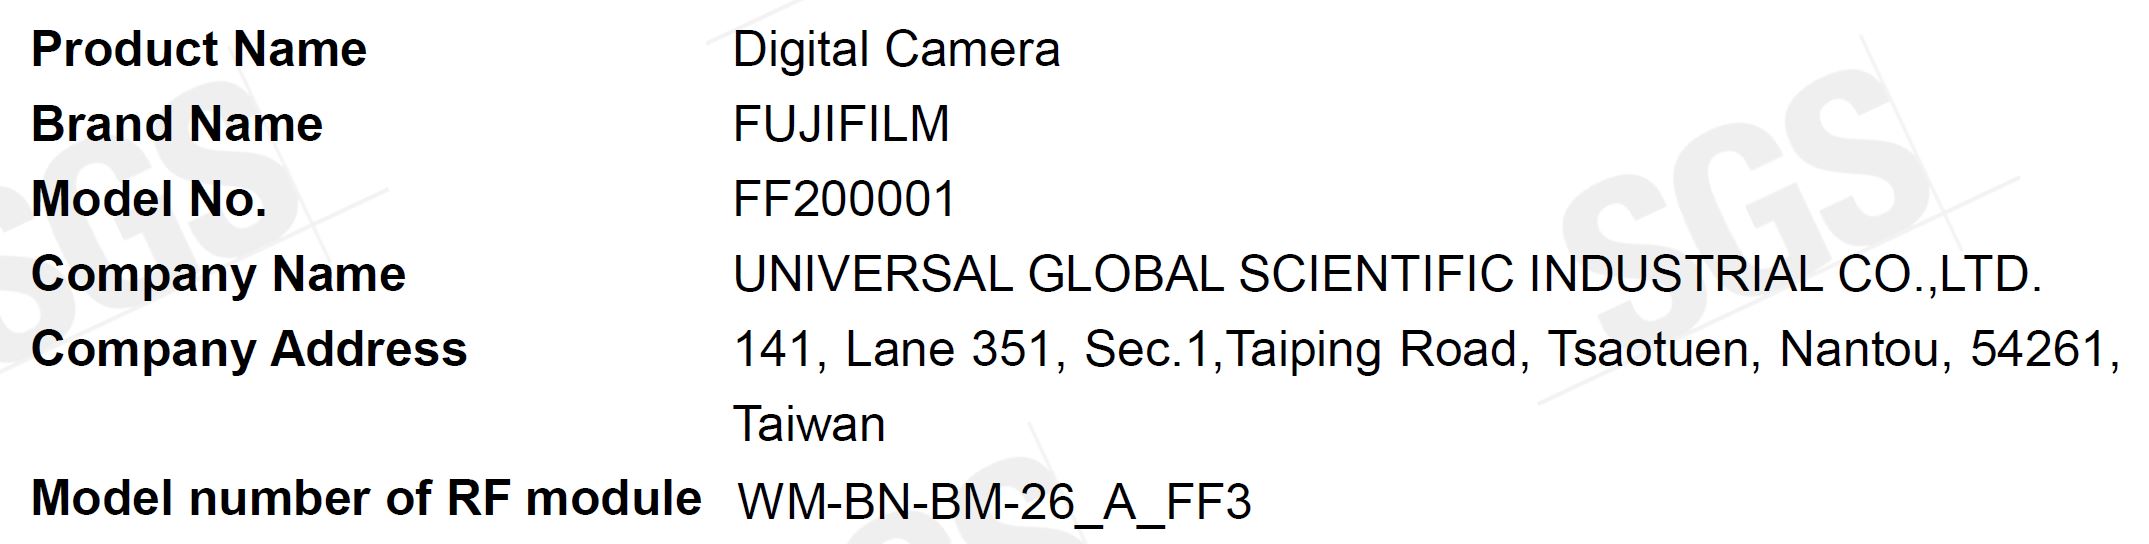 Một chiếc máy ảnh Fujifilm mới vừa được đăng ký và sẽ ra mắt 16/10